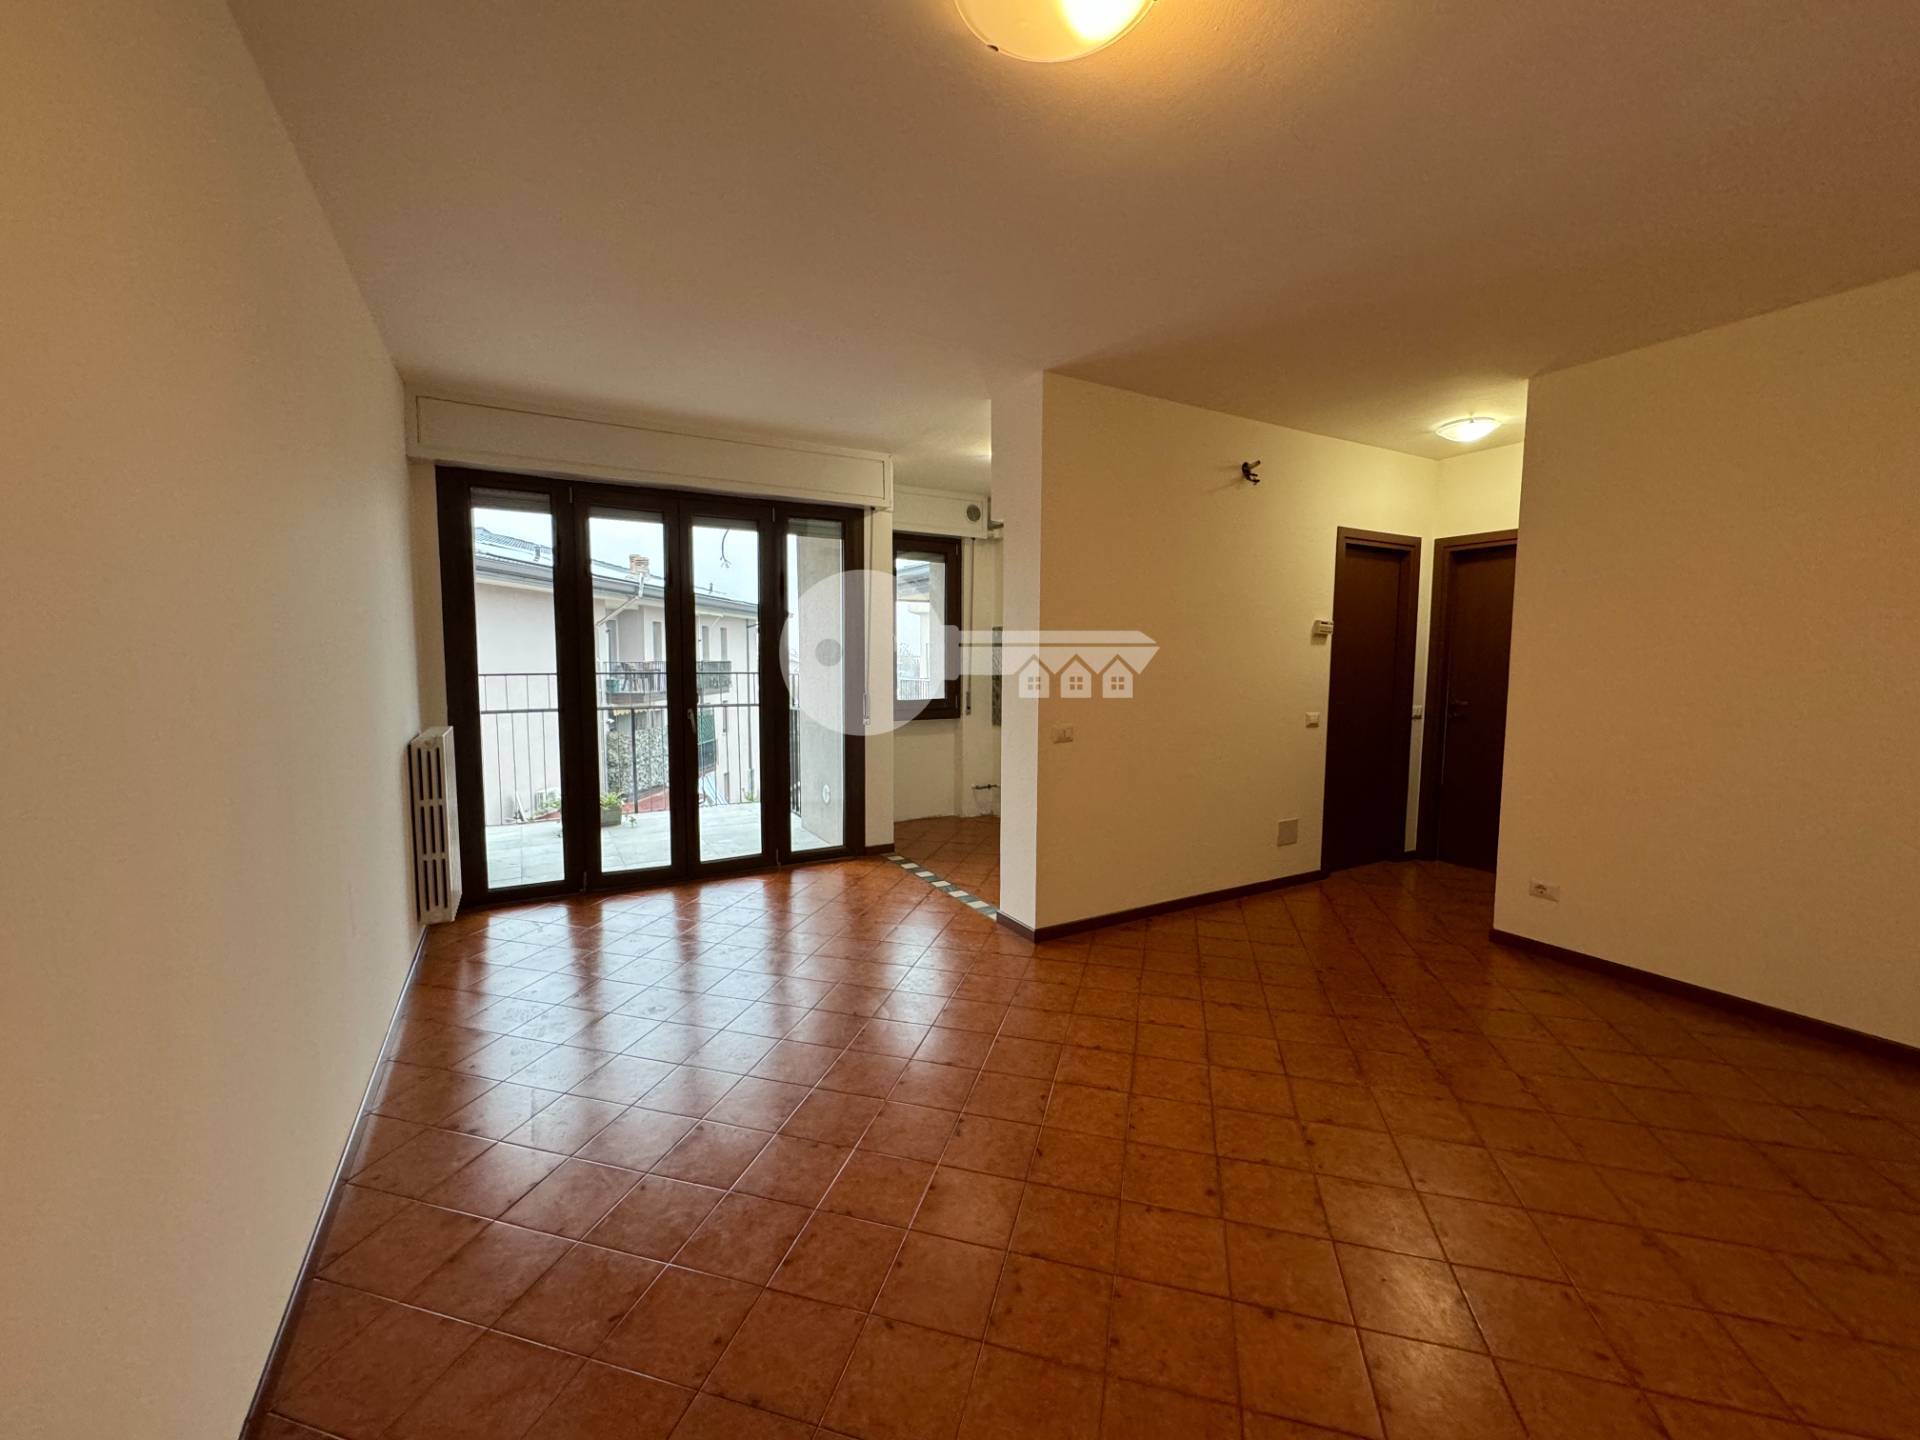 Appartamento in vendita a Montichiari, 3 locali, prezzo € 127.000 | PortaleAgenzieImmobiliari.it